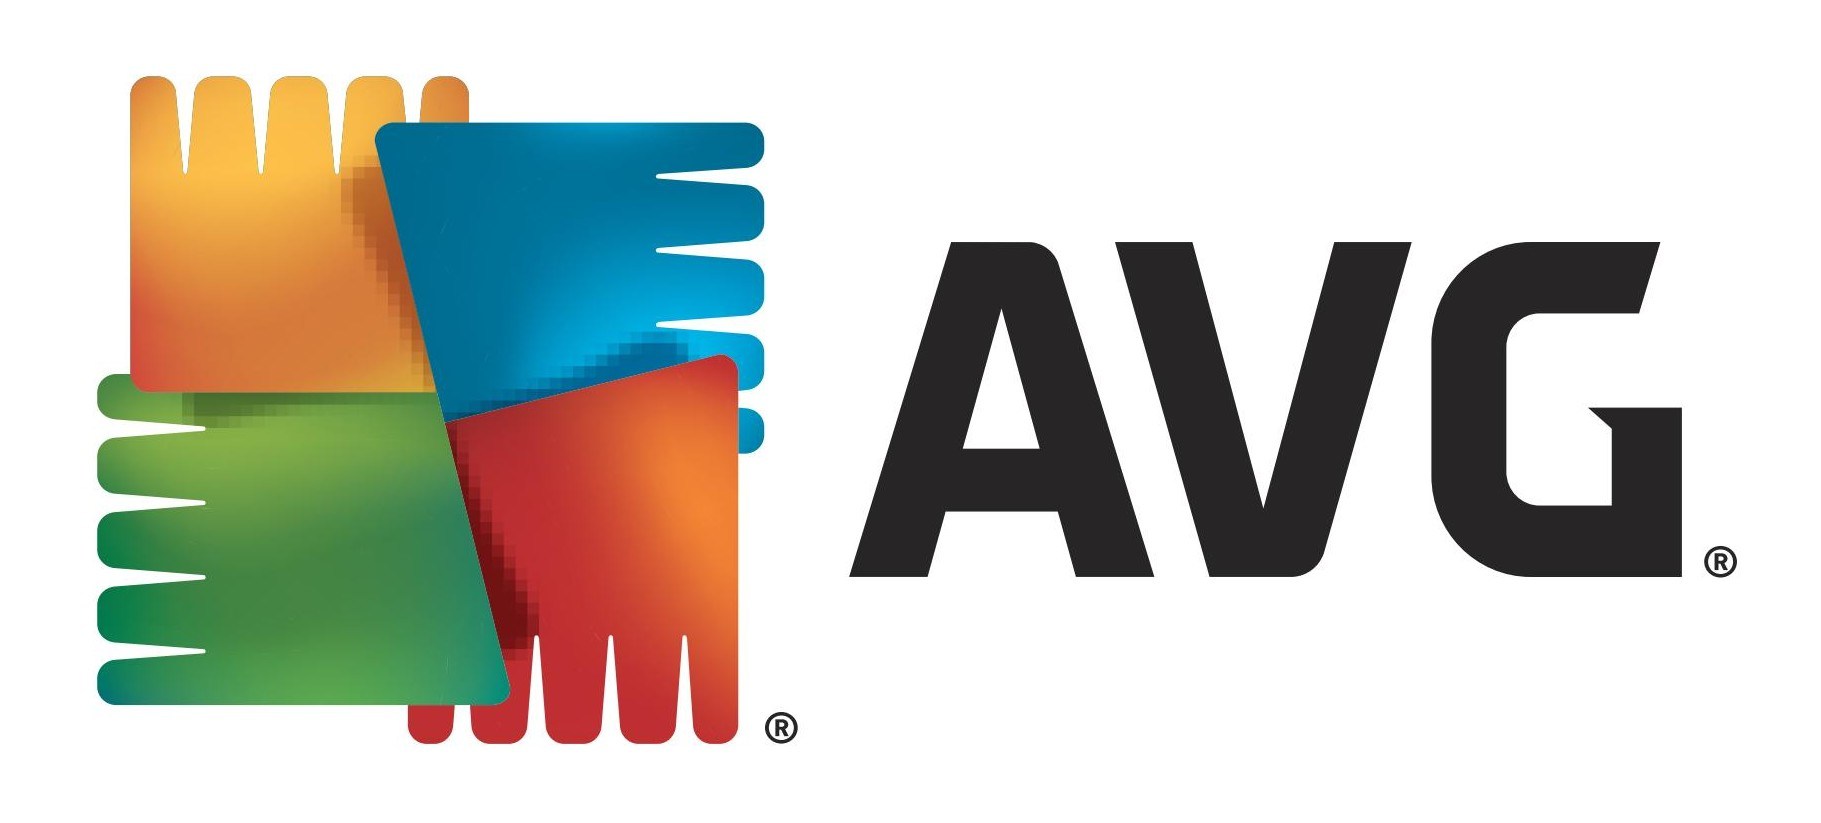 AVG Technologies logo